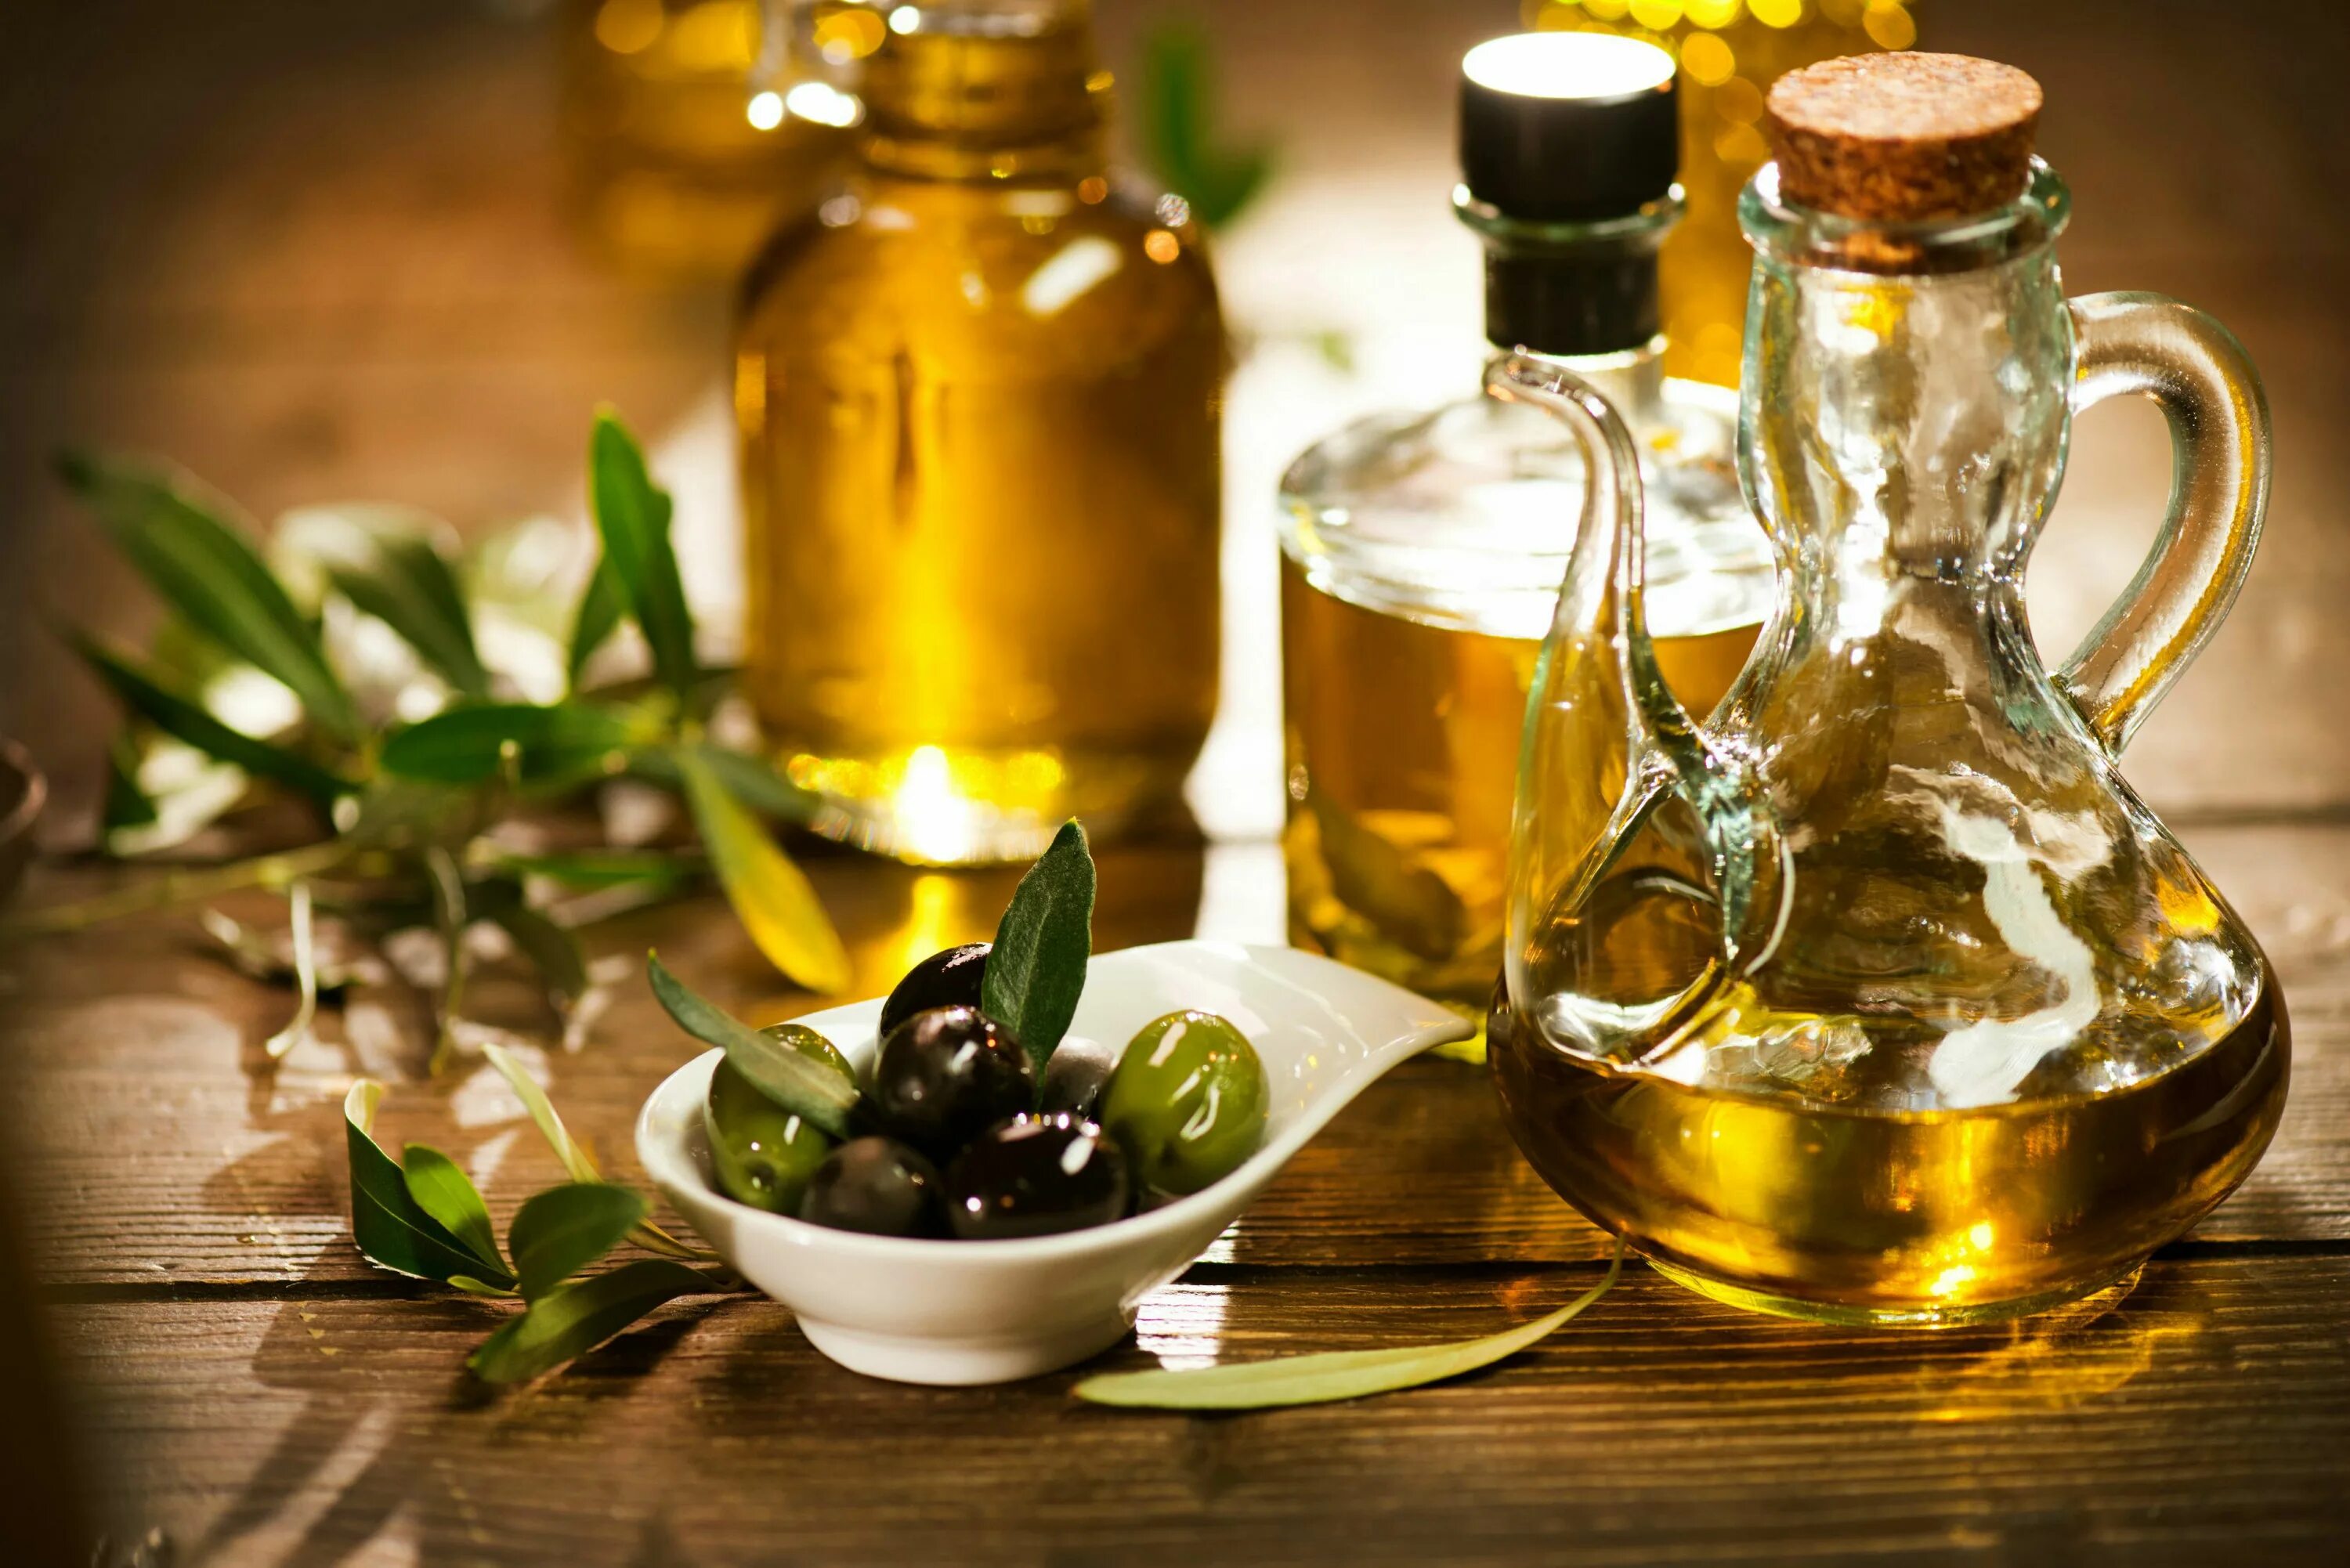 Olive Oil масло оливковое. Олив Ойл масло оливковое. Масло растительное с оливковым. Оливки и оливковое масло. Растительное масло для здоровья